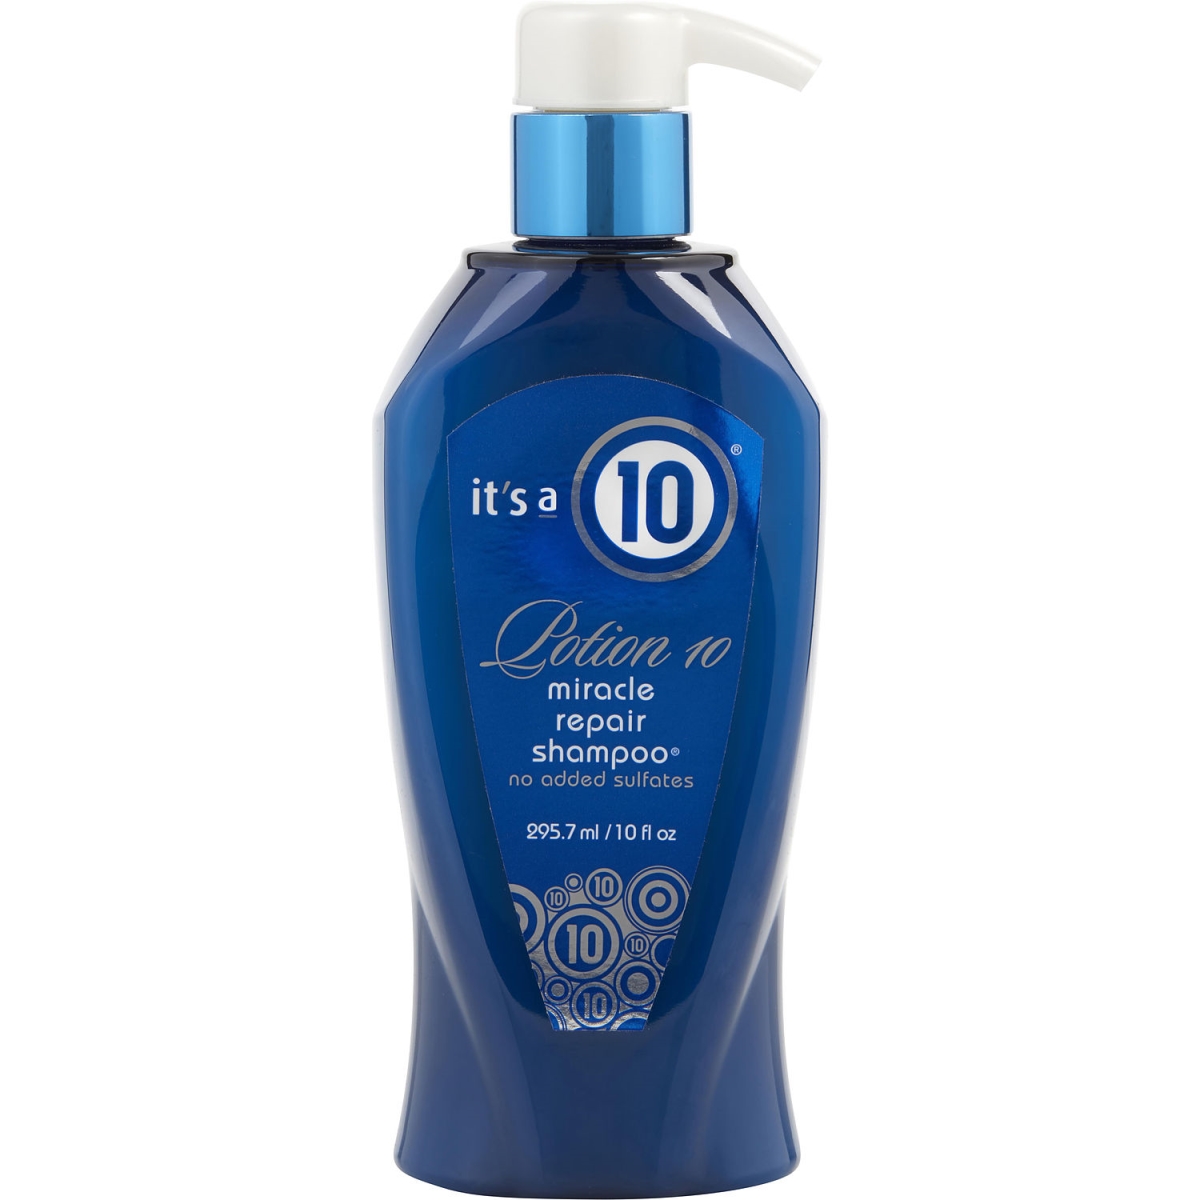 Its A 10 300063 10 Oz Unisex Potion 10 Miracle Repair Hair Shampoo